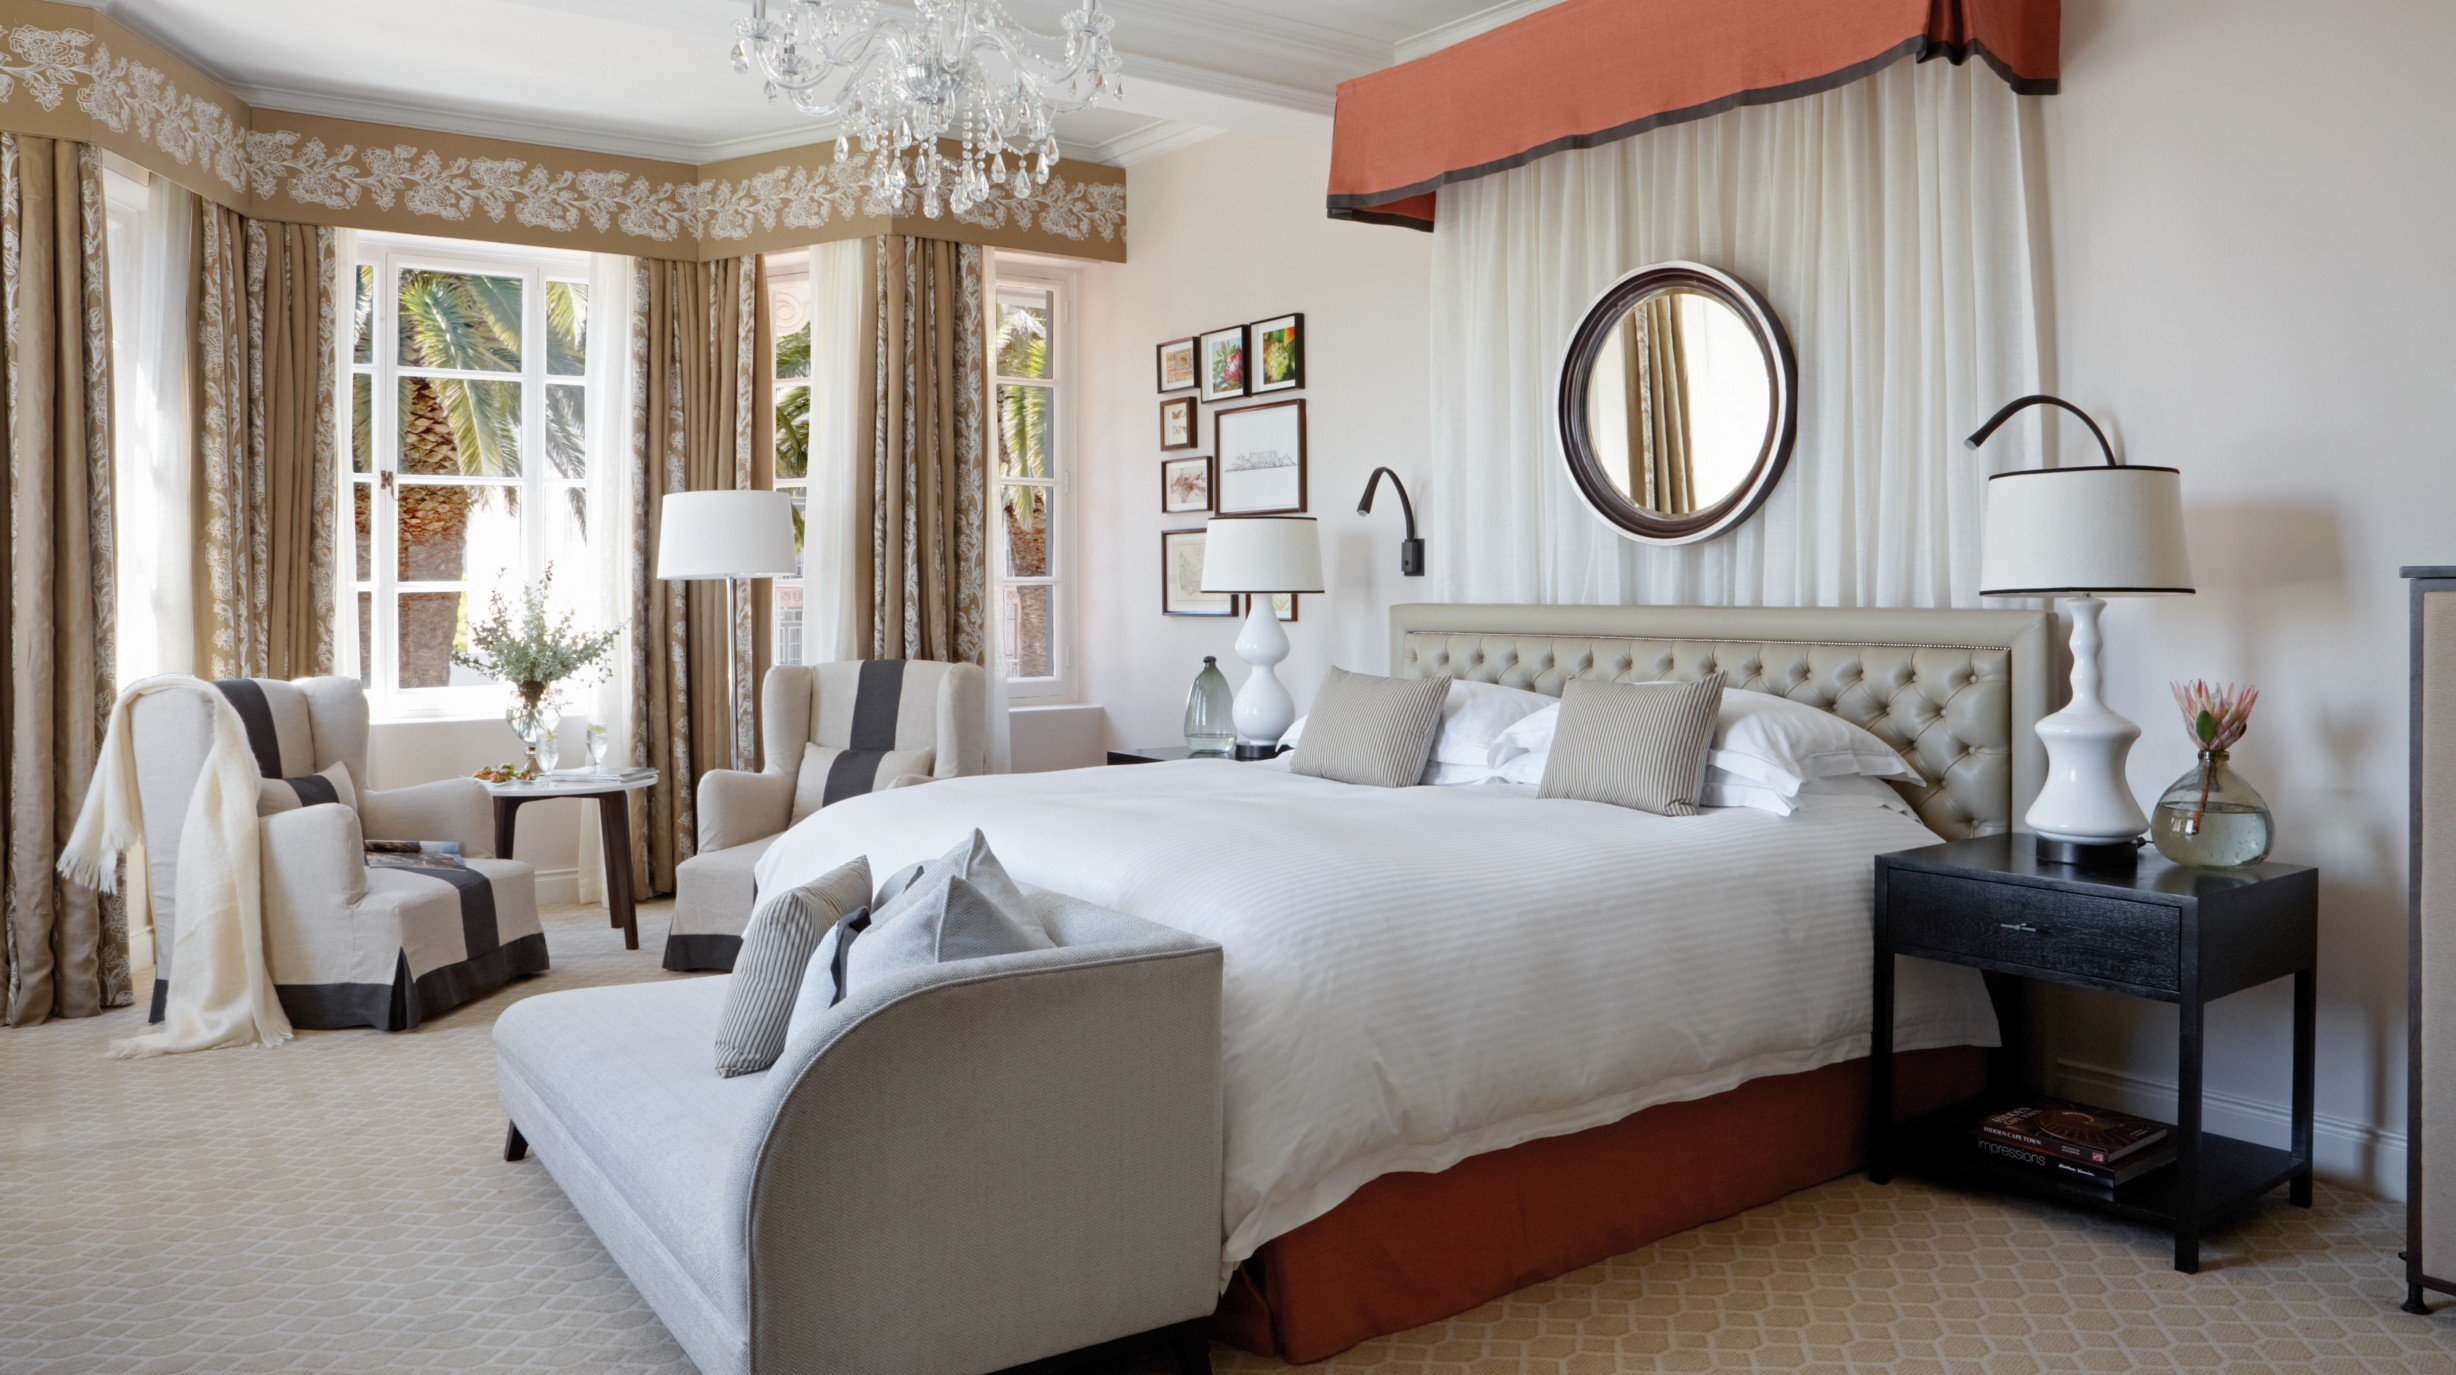 Zuid-Afrika - Belmond Mount Nelson Hotel - Bedroom (1)